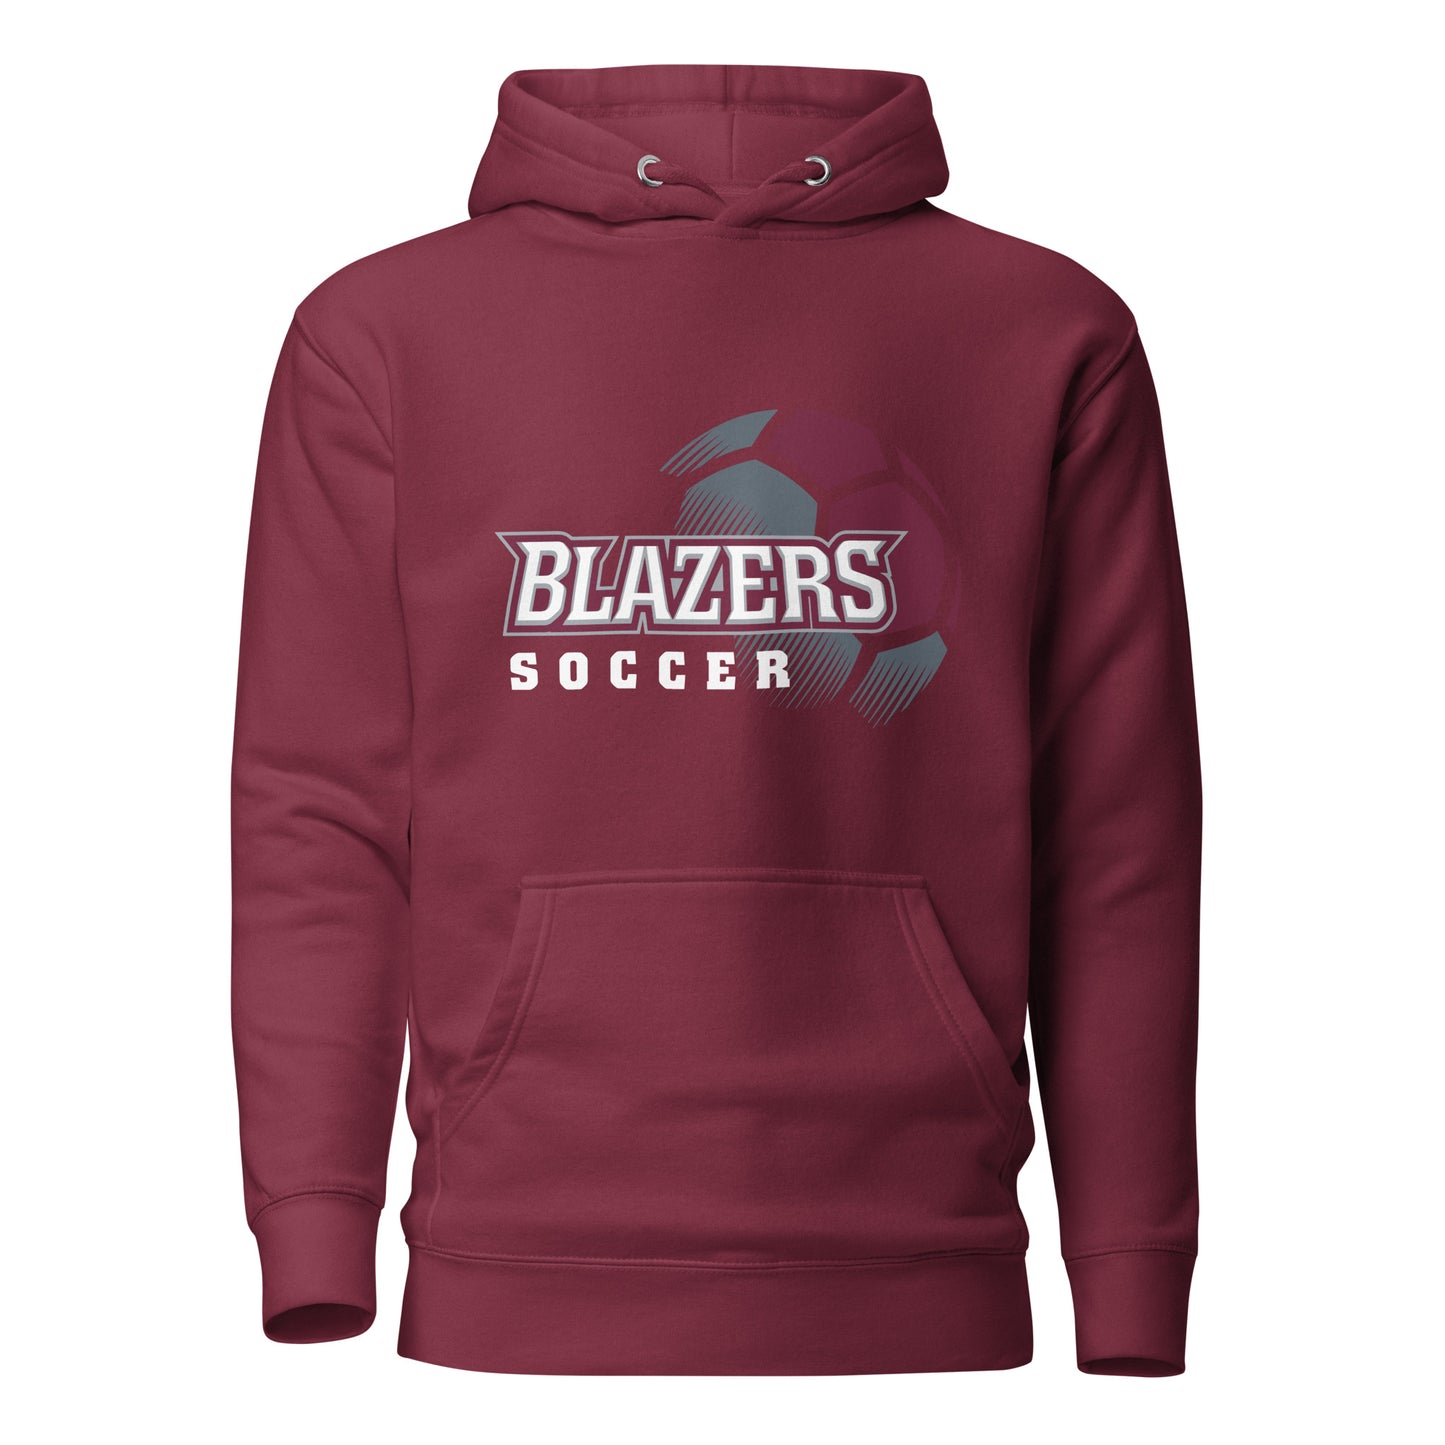 Blazers Soccer Unisex Hoodie